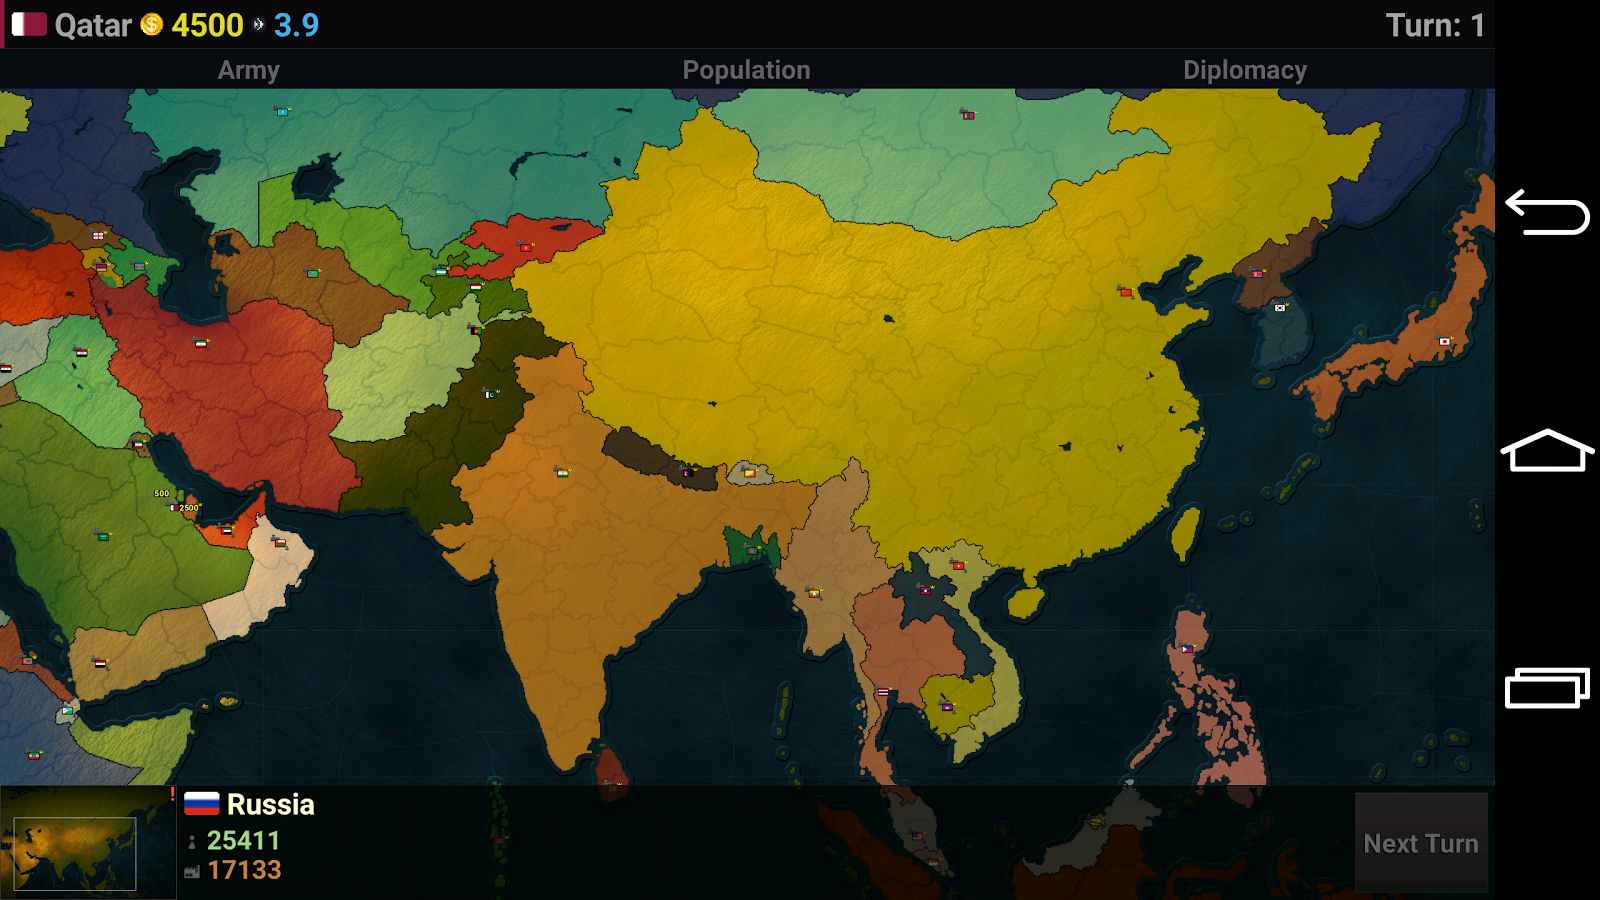    Age of Civilizations Asia- screenshot  